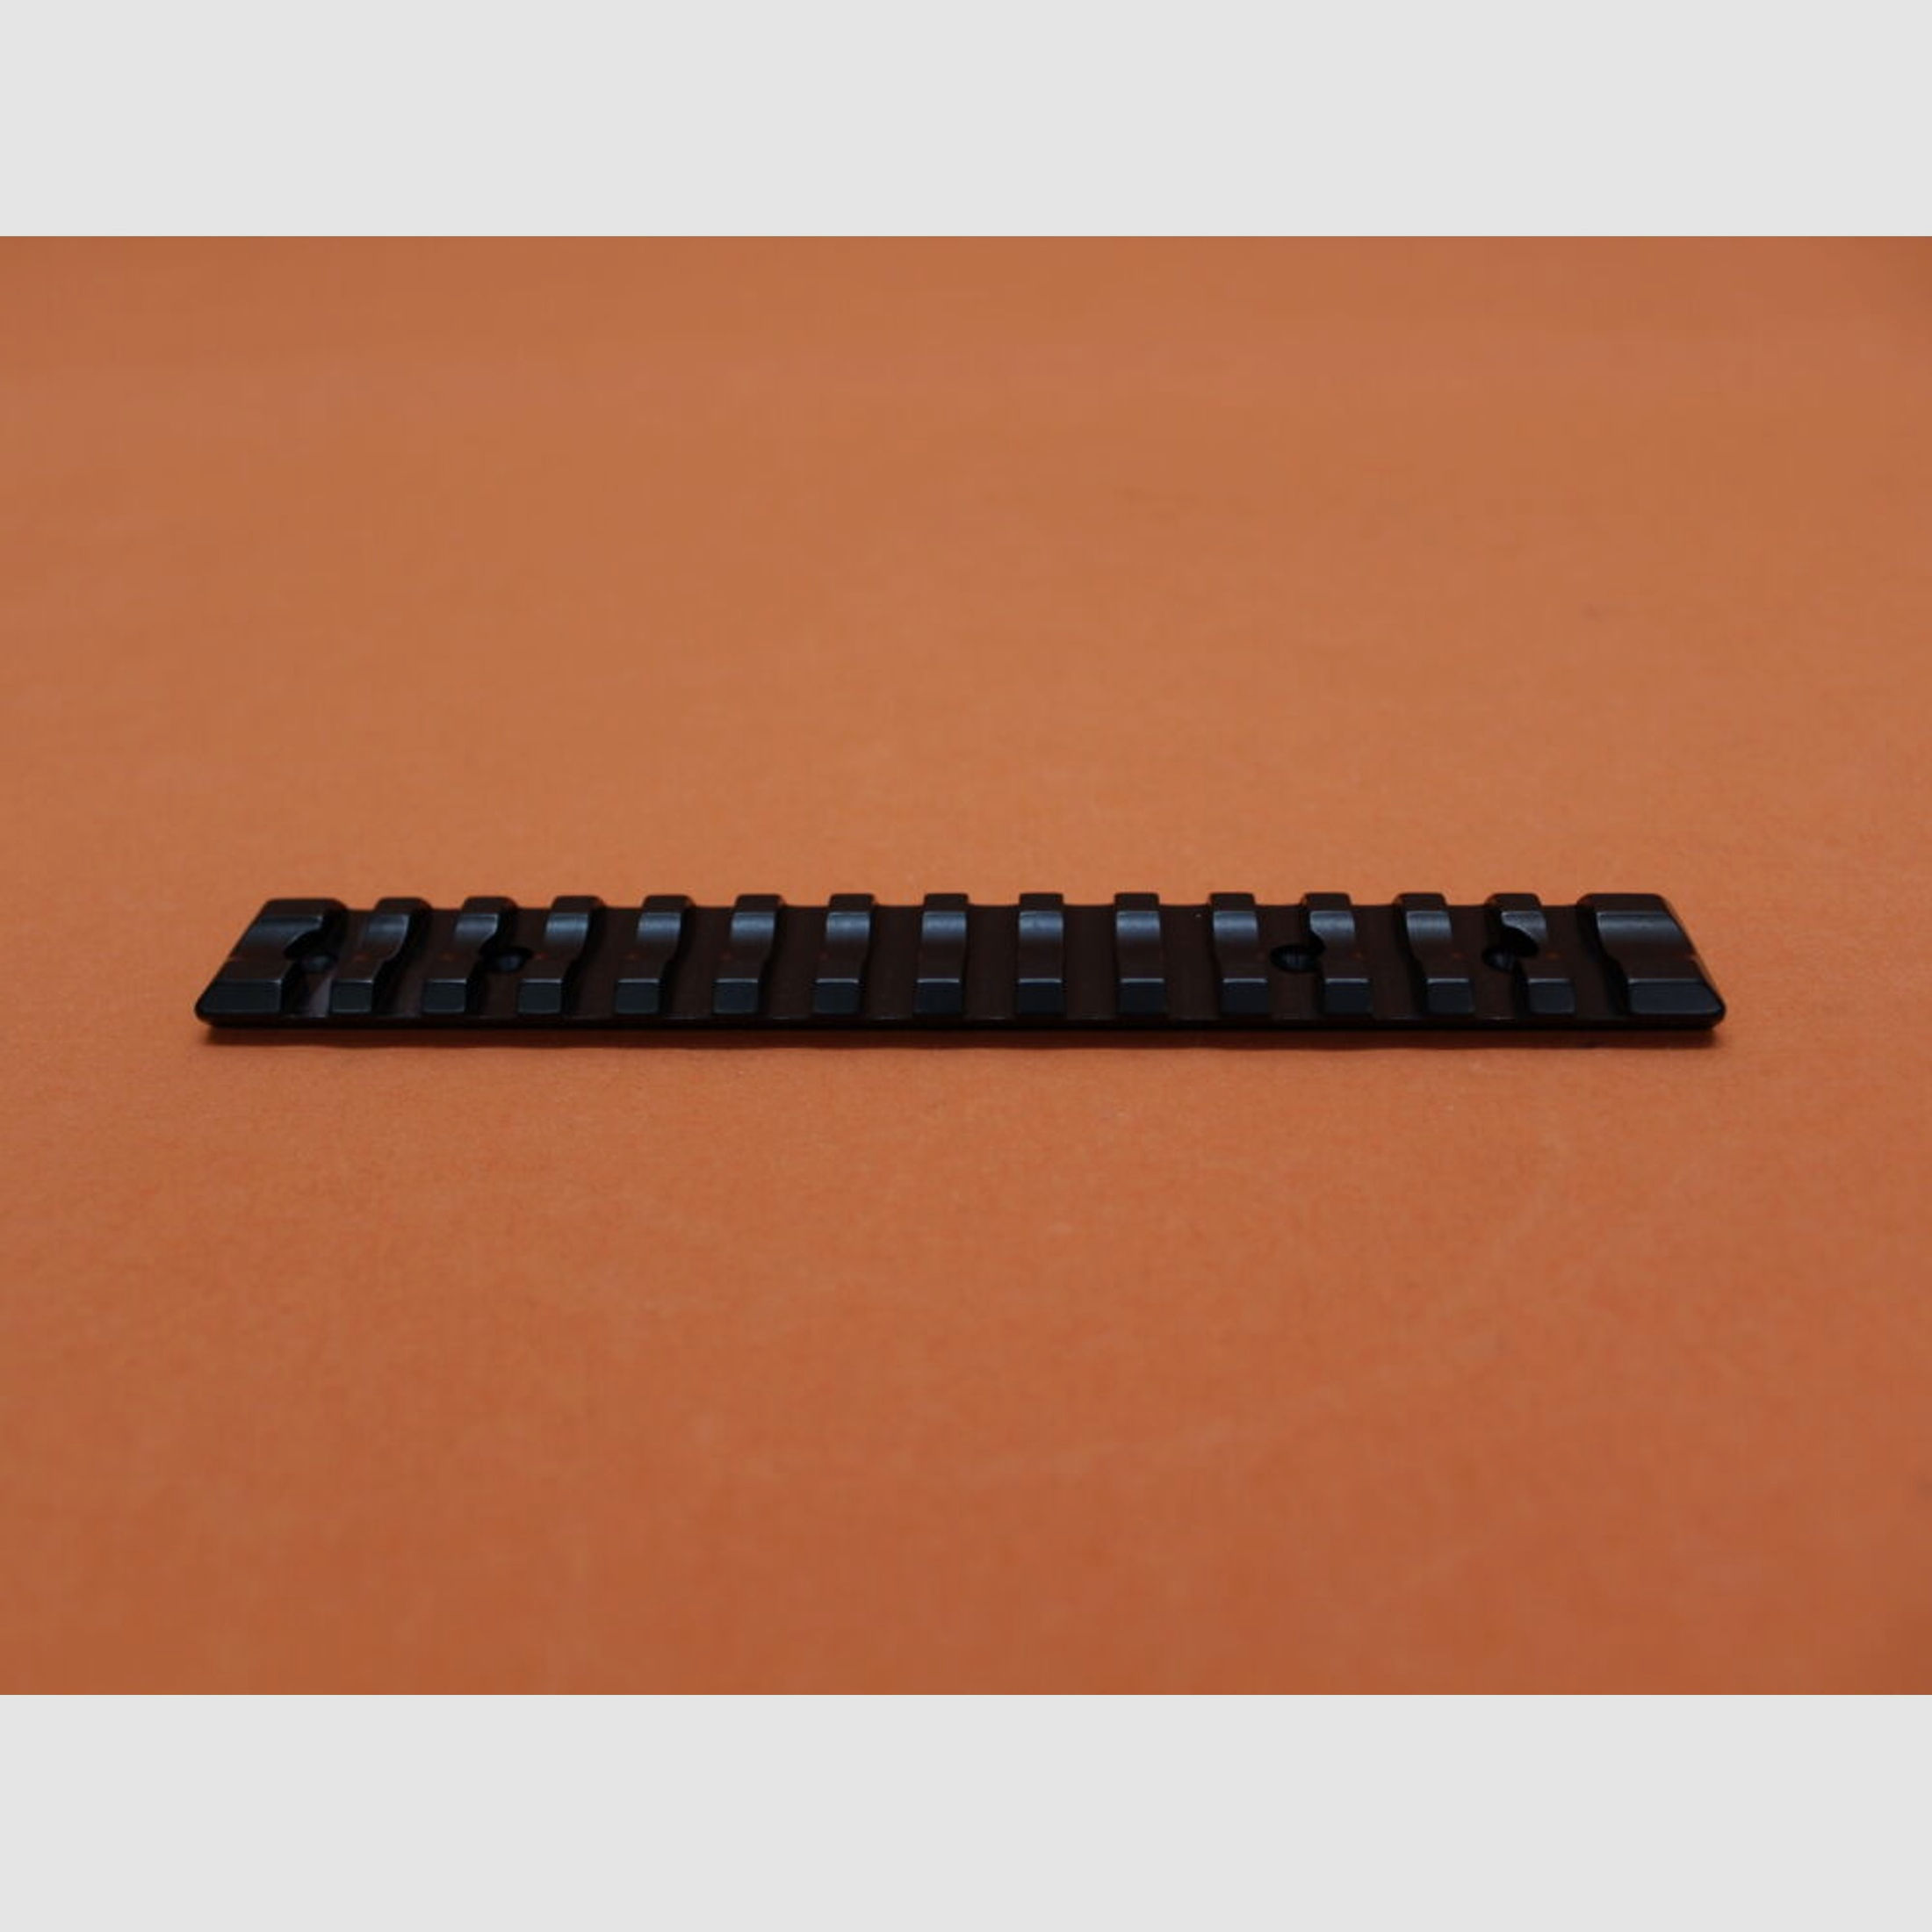 Recknagel	 Era-Tac (57050-0081) Picatinnyprofil-Montageschiene für Tikka T3/T3, BL=150mm, Alu schwarz